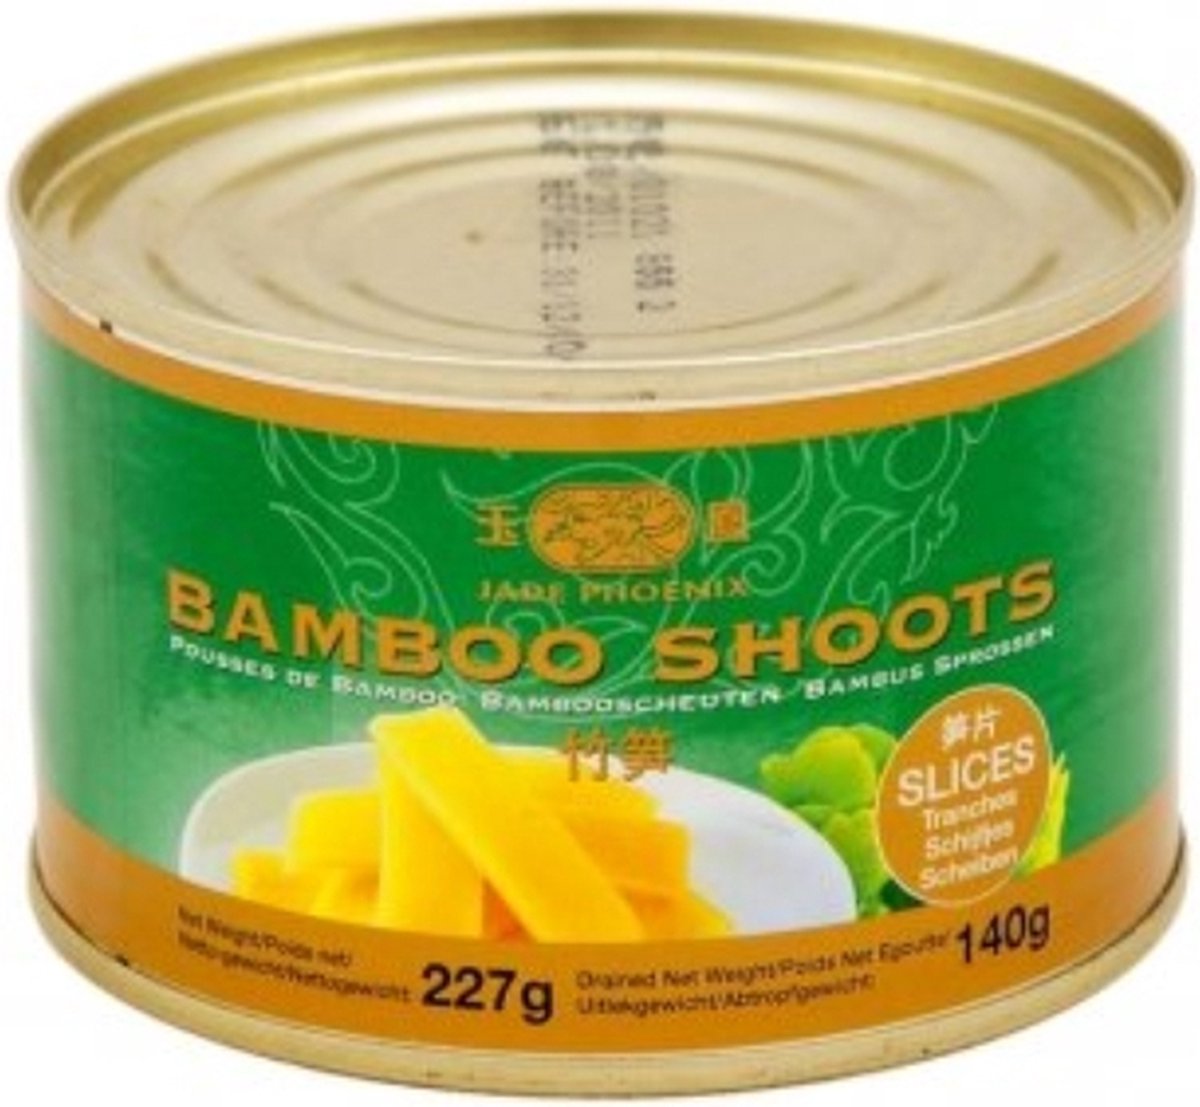 X.O Bamboo Shoot Slices (277g)